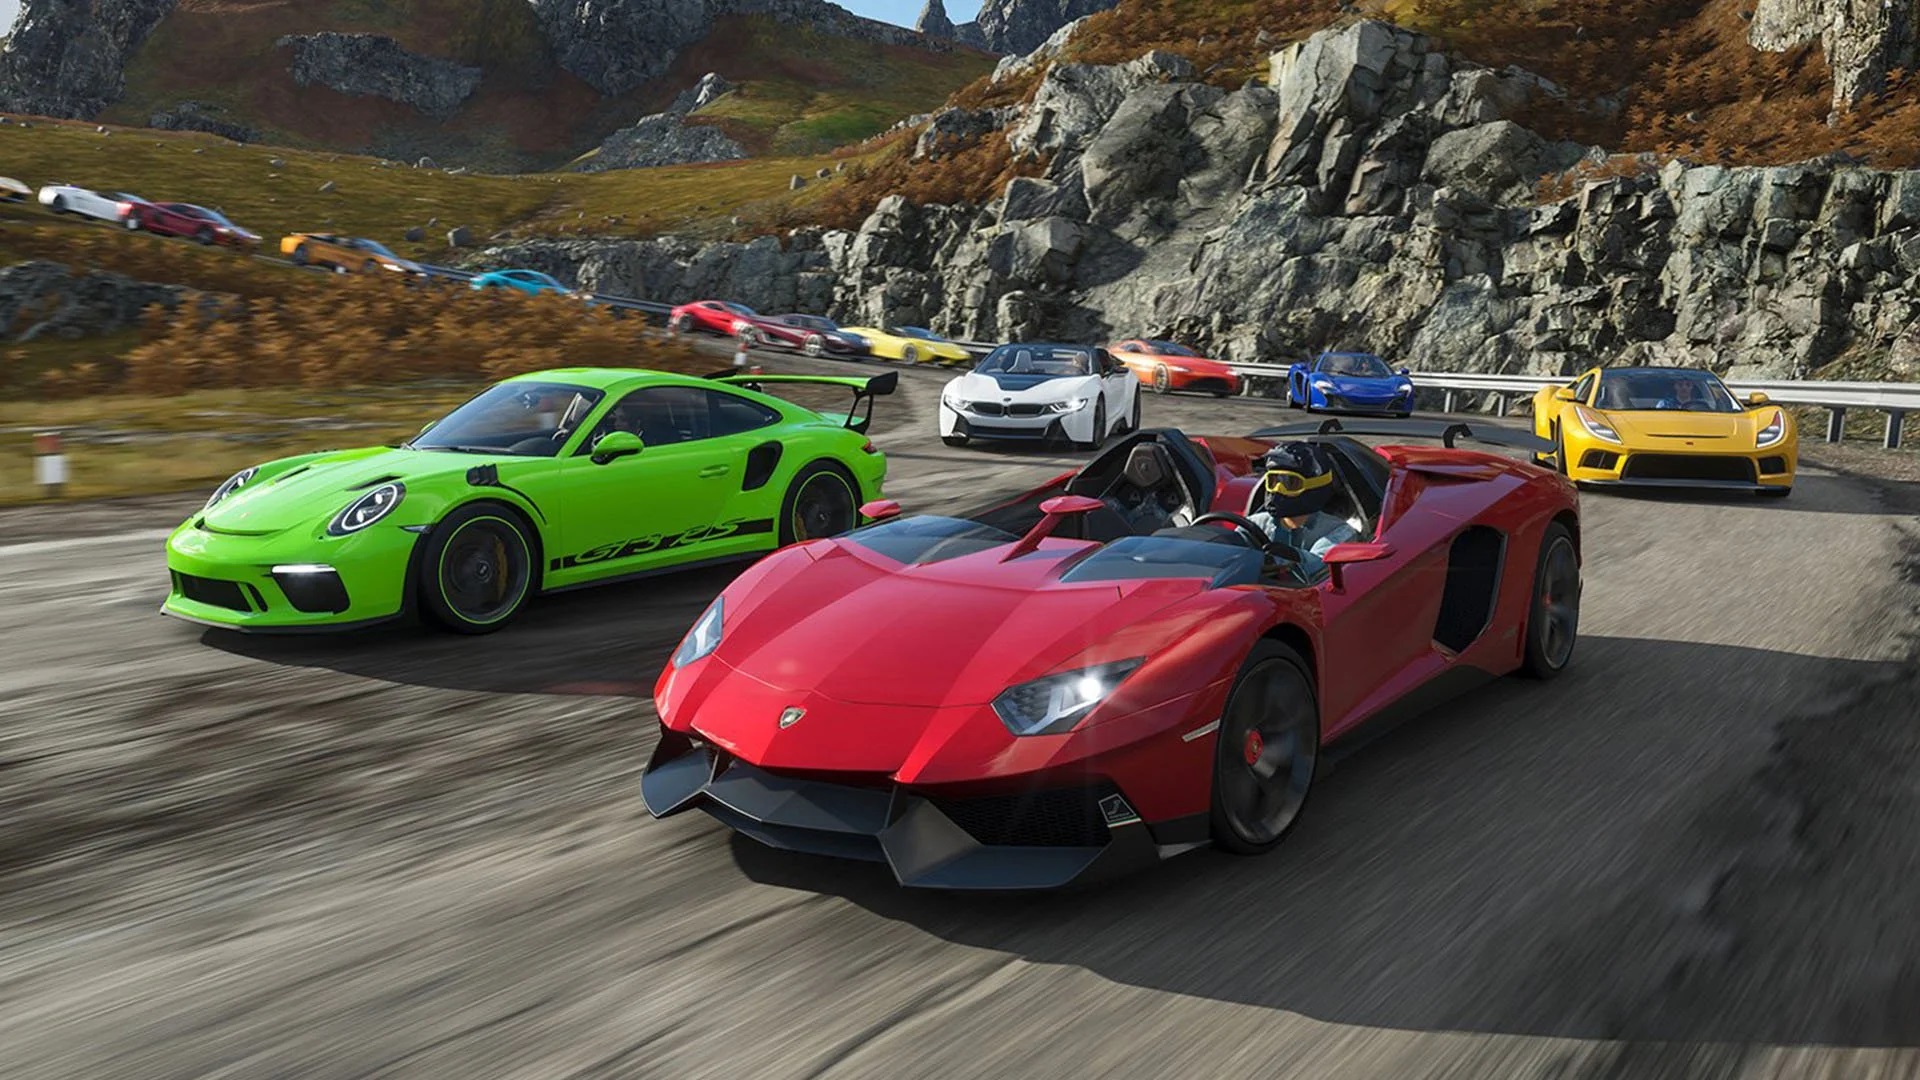 Cotxes enfrontats en una de les curses del Forza Motorsports, videojoc més inclusiu segons el FIVI.